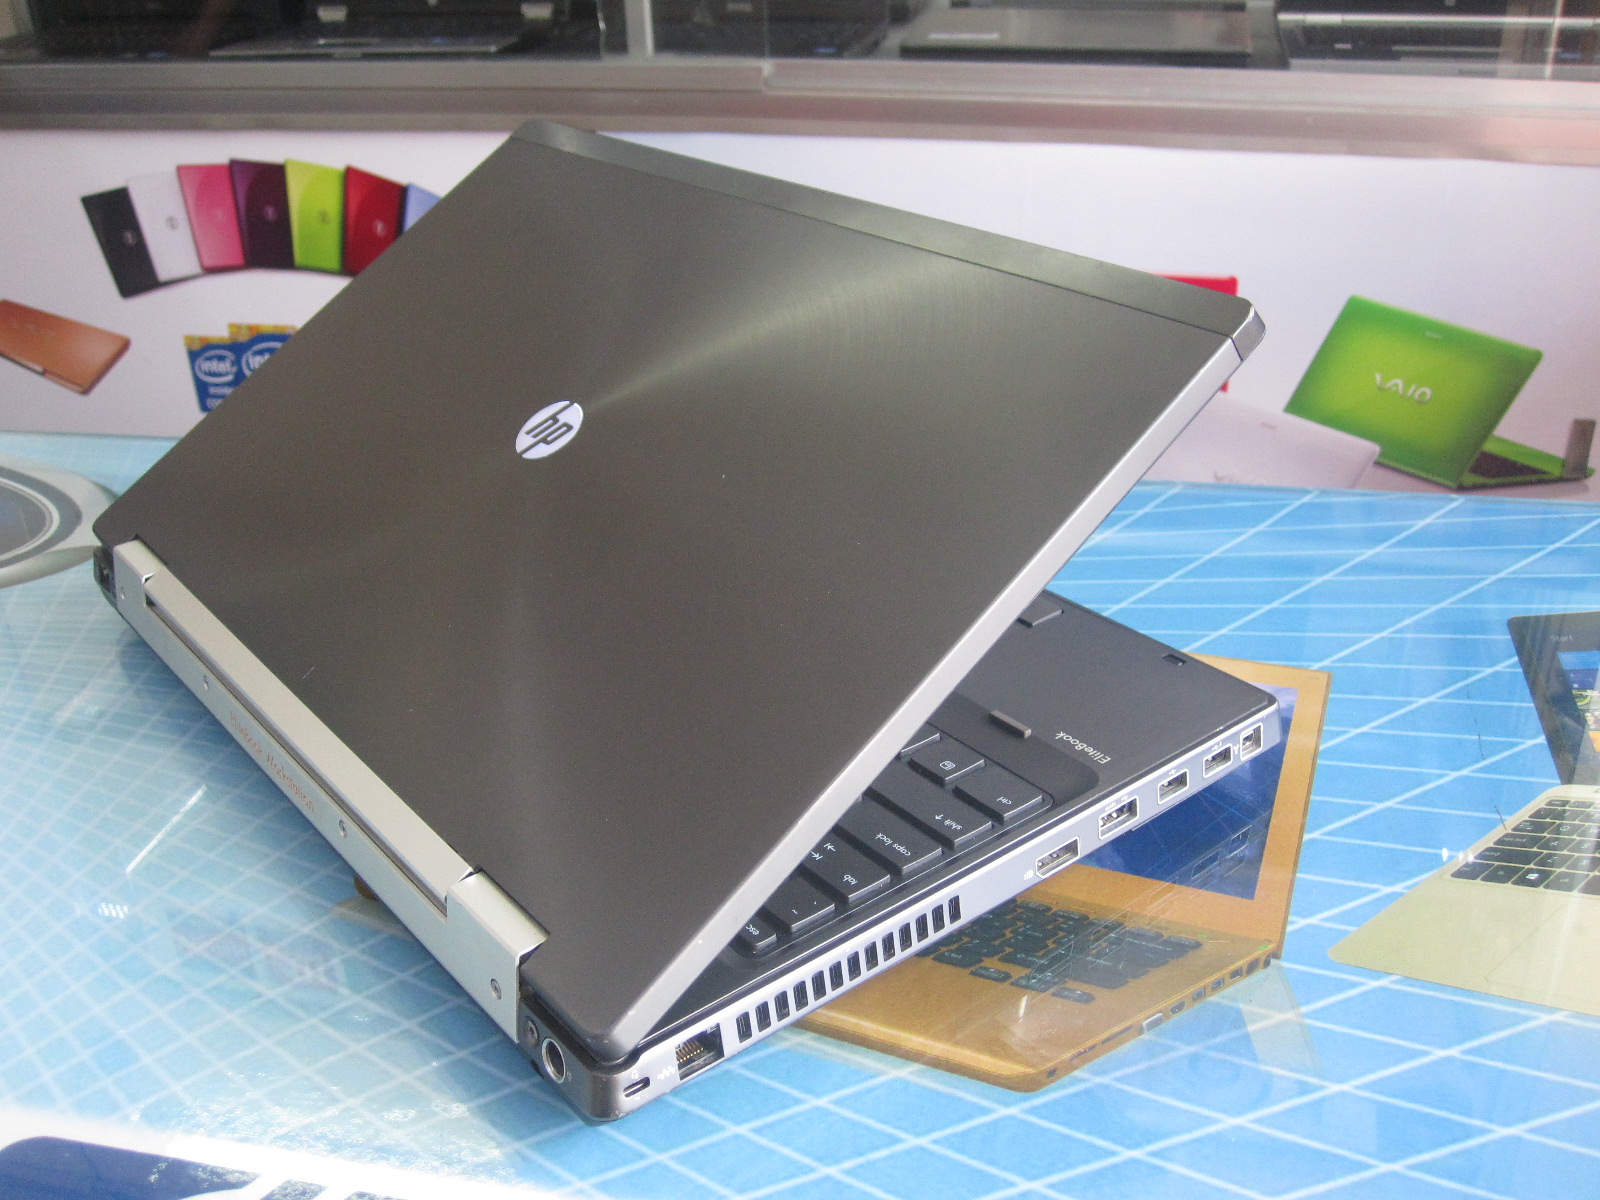 Có nên mua laptop HP cũ giá rẻ không? Vì sao?